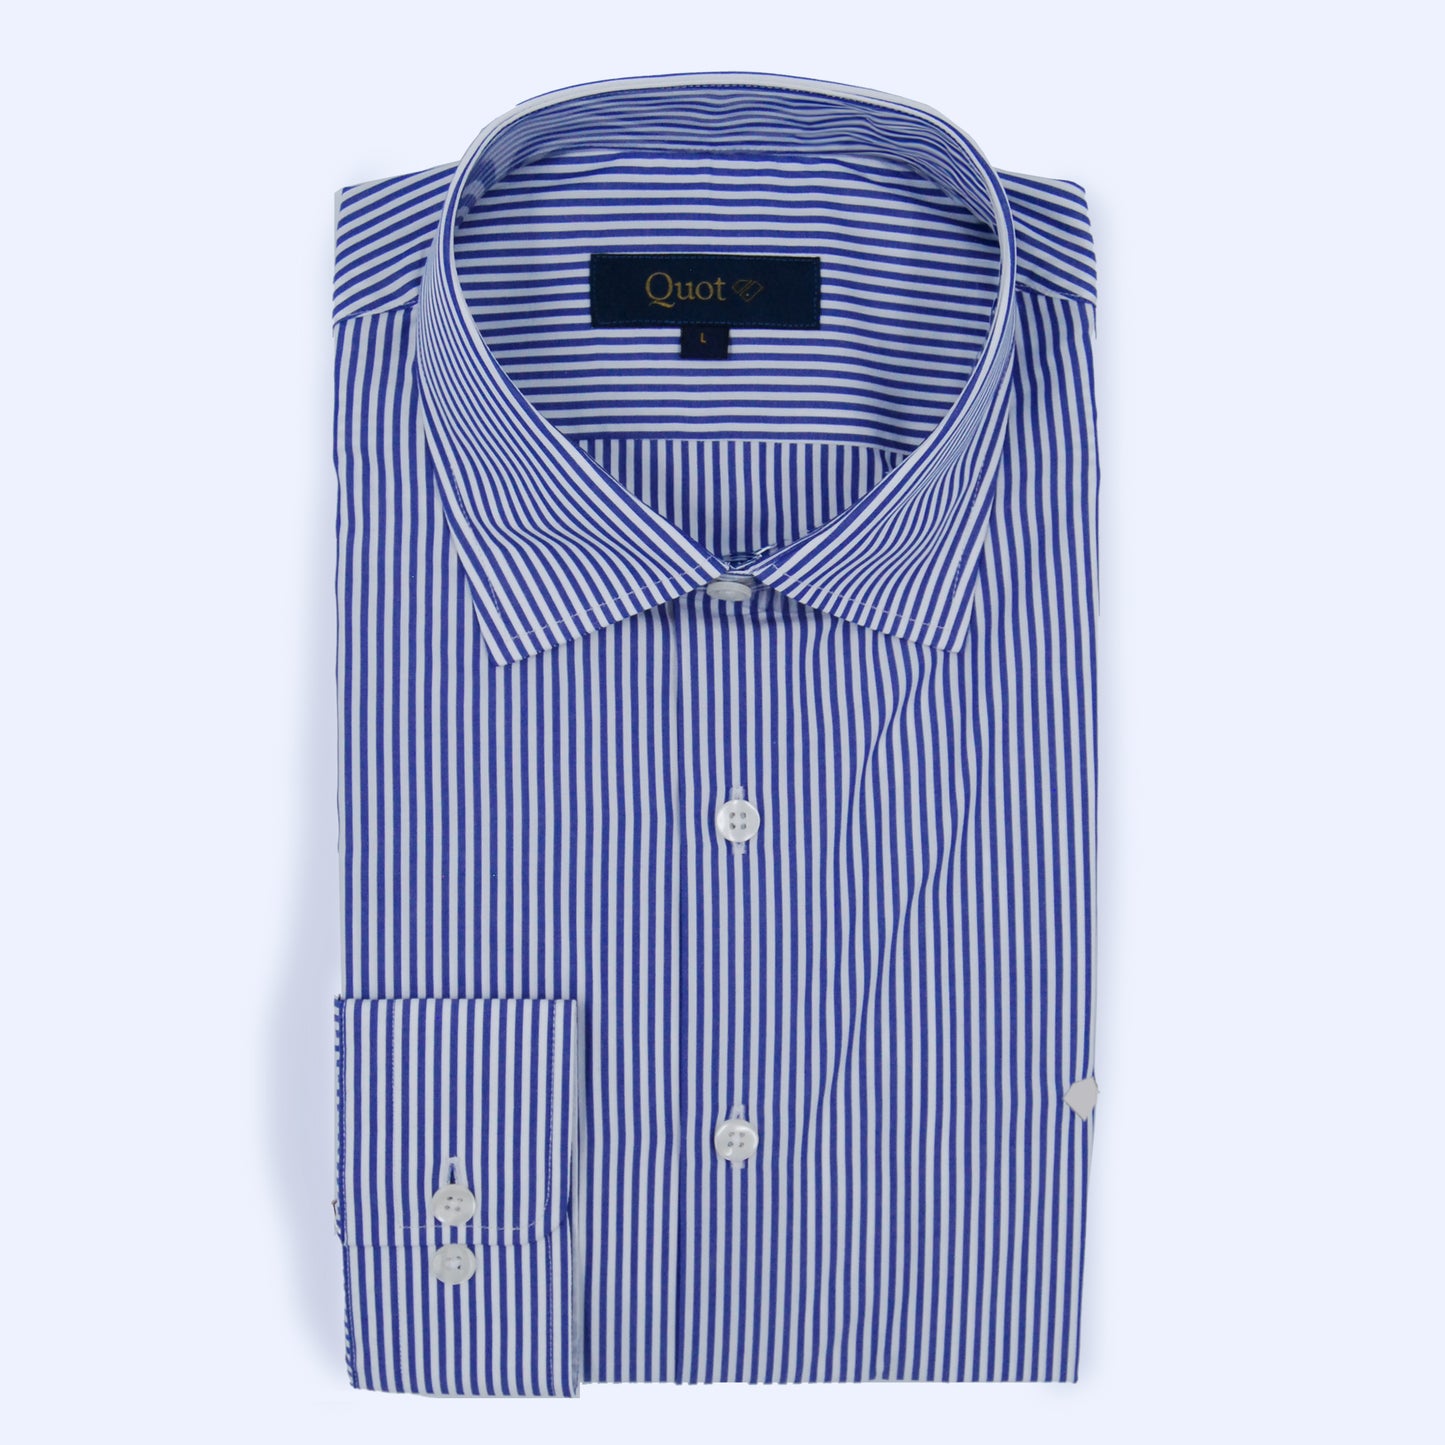 Camisa 100% algodón - Lineas azul